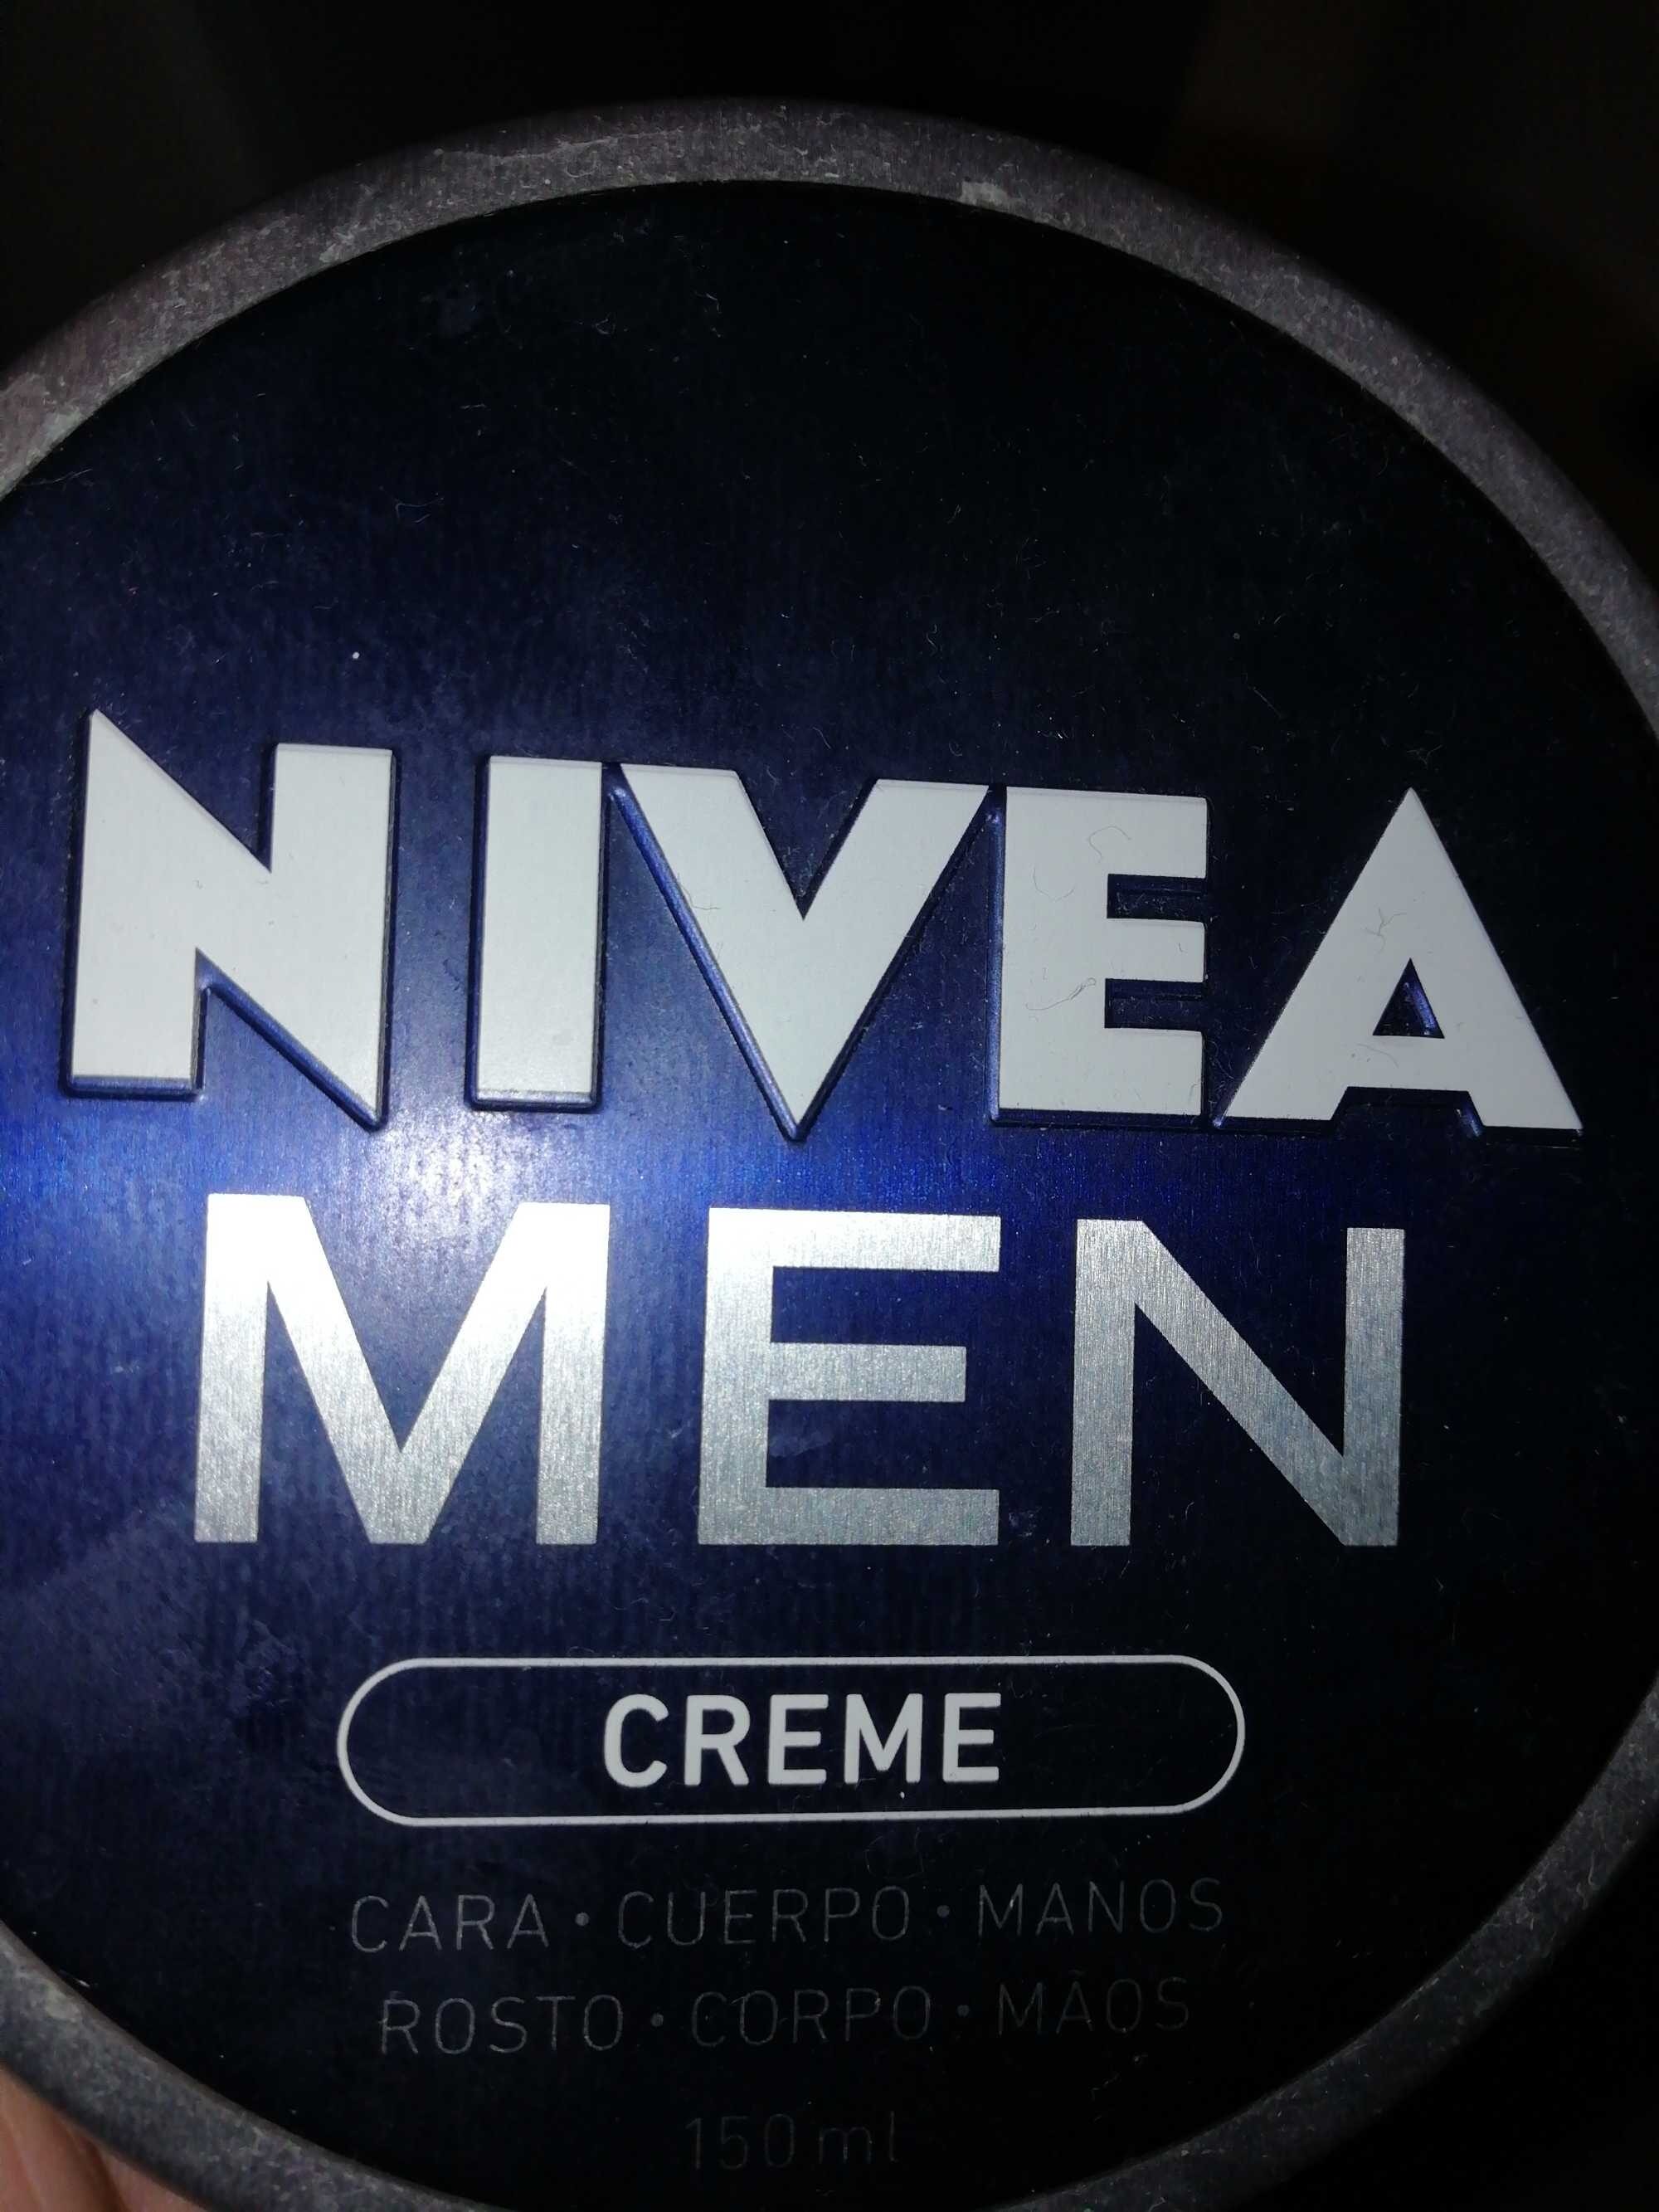 Nivea Men Creme - Product - es